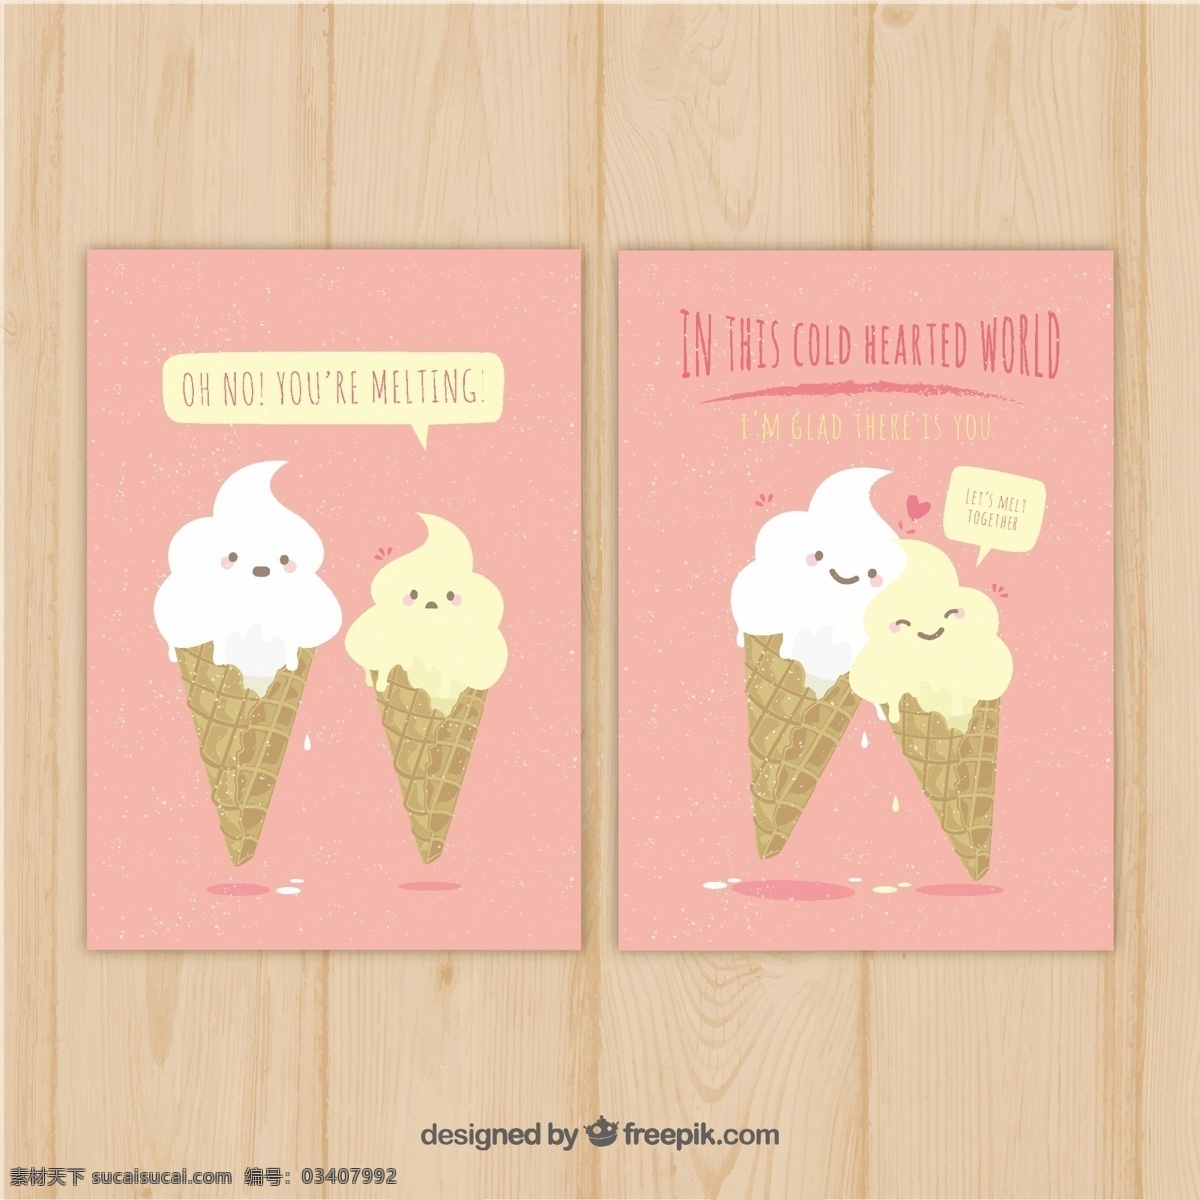 粉红色 卡片 模板 冰淇淋 人物 食物 夏天 角色 可爱 颜色 冰 甜 有趣 装饰 甜点 滑稽 奶油 吃 字符